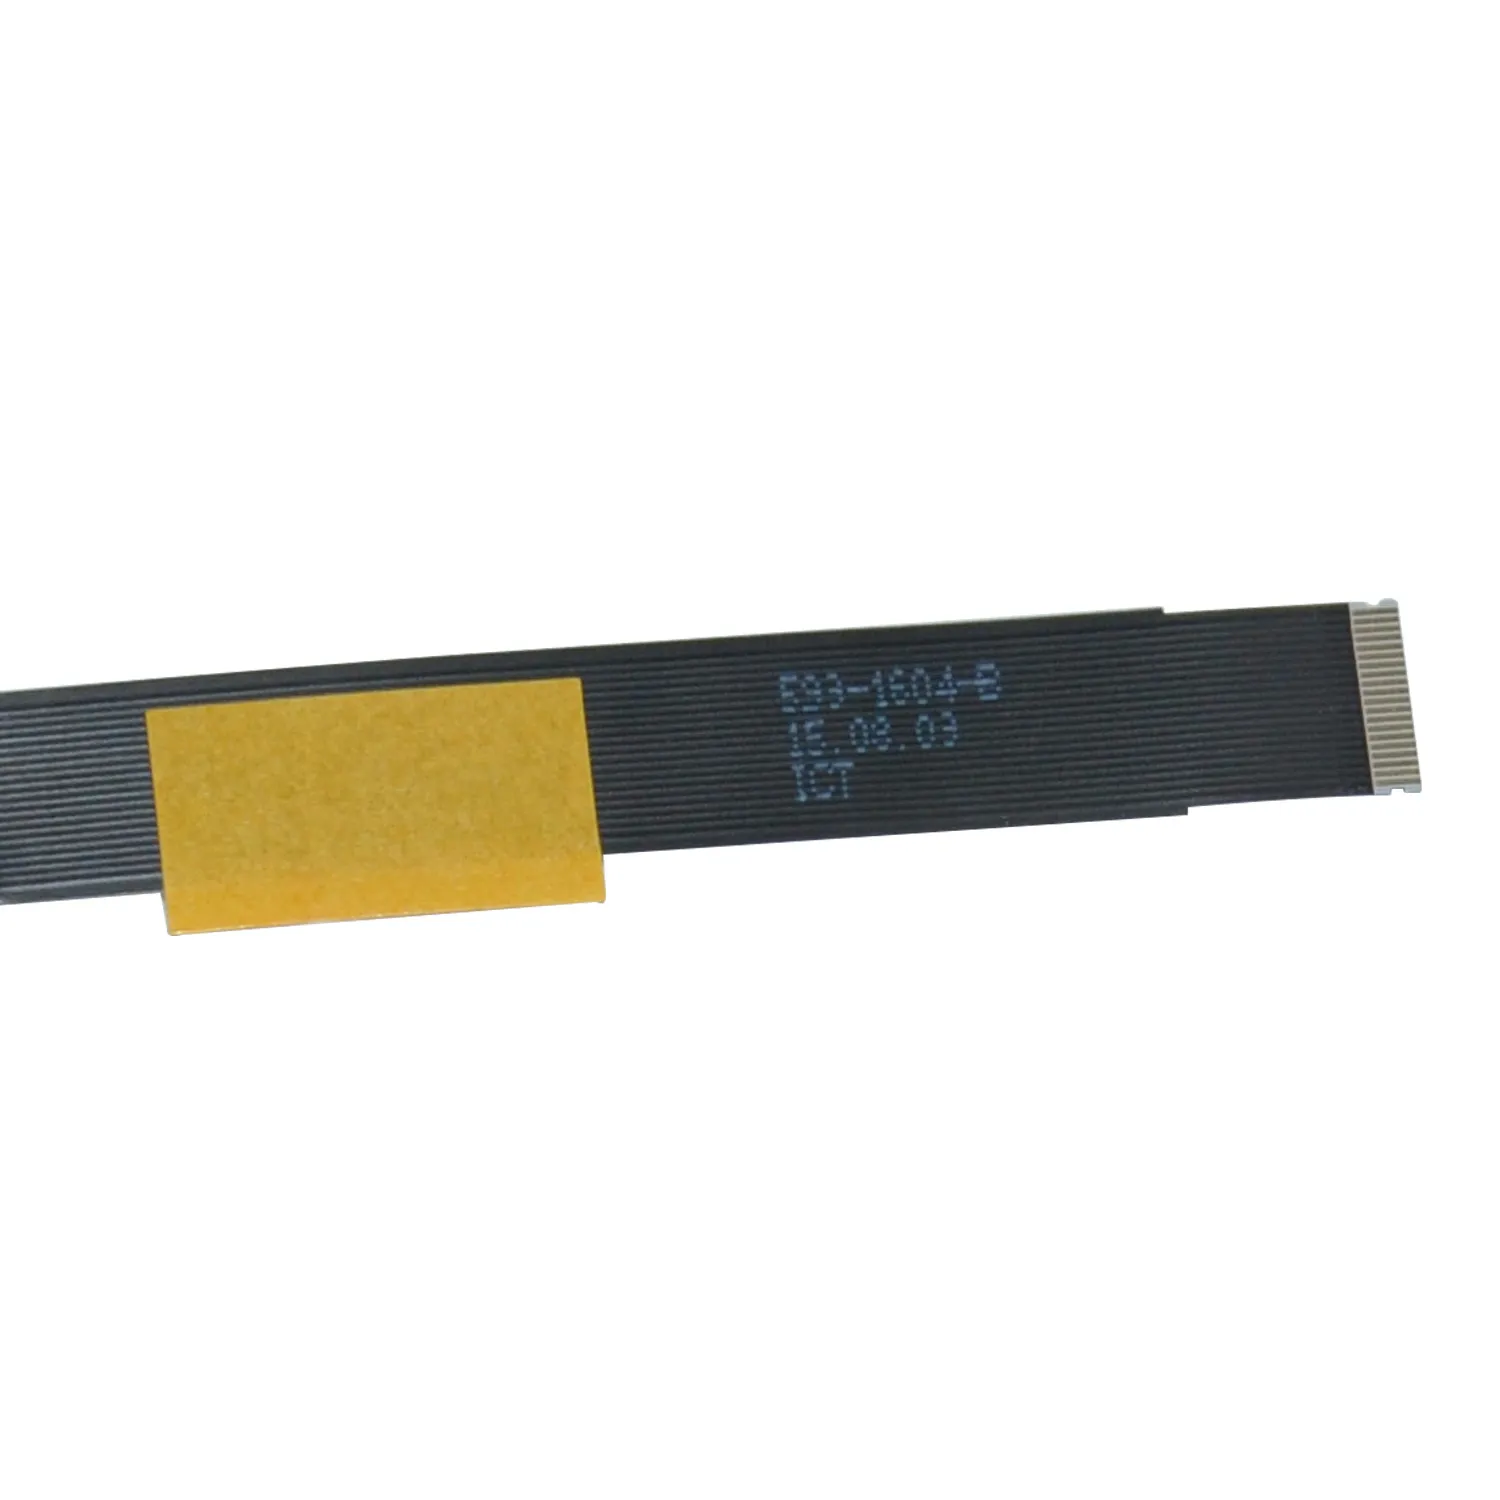 جديد 593-1604-B 923-0441 كابل لماك بوك اير 13 بوصة A1466 تراكباد TouchPad Ribbon Flex Cable 2013 2014 2015 Year